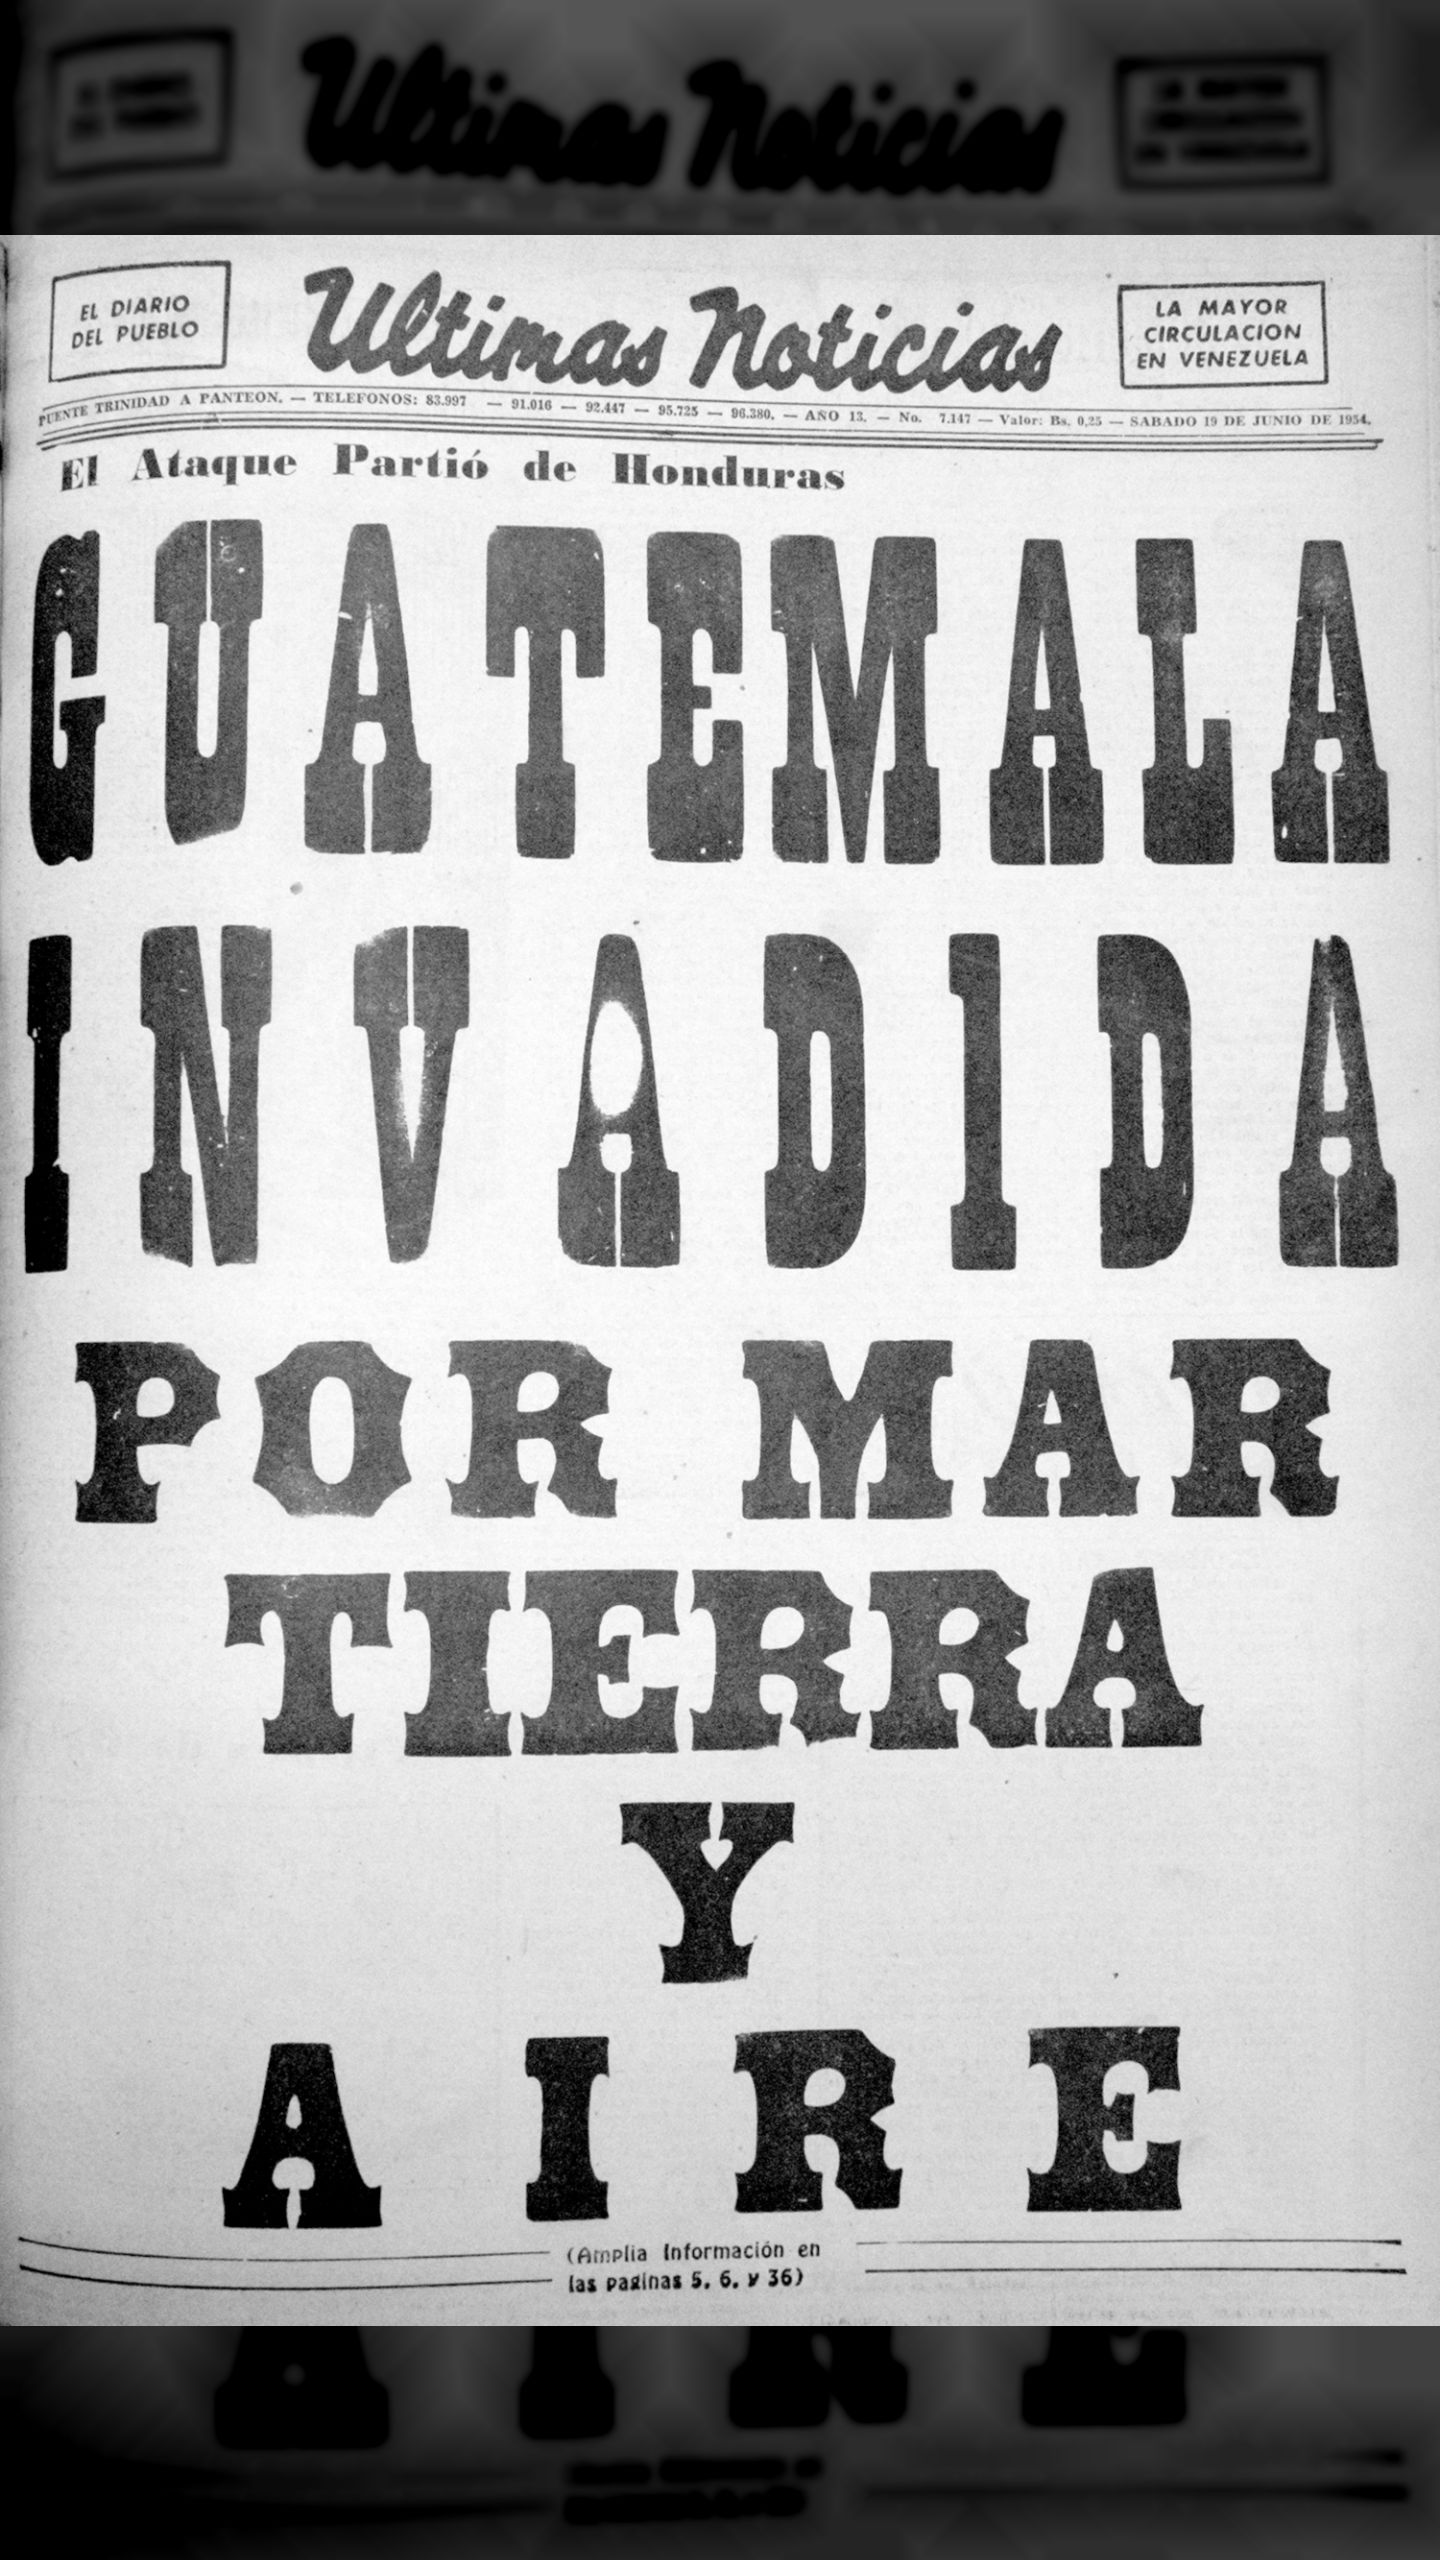 Guatemala invadida por mar. tierra y aire (Últimas Noticias, 19 de junio de 1954)